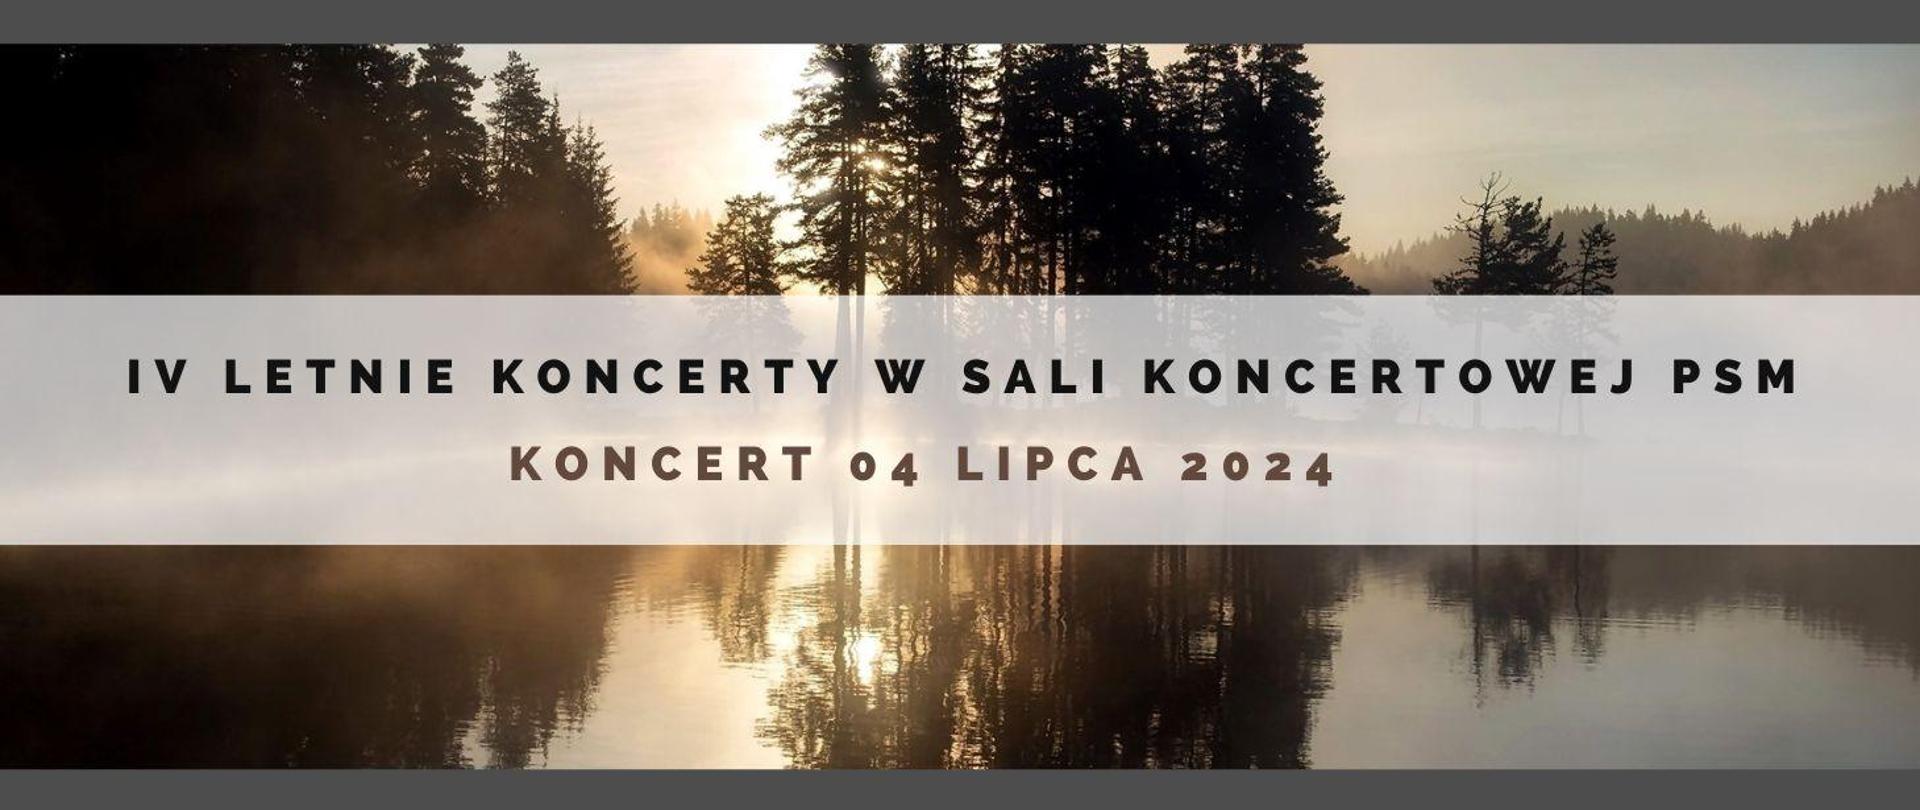 Zdjęcie jeziora we mgle, na nim informacja o koncercie 04.07.24 oraz nazwa cyklu koncertów IV Letnie Koncerty w sali koncertowej PSM